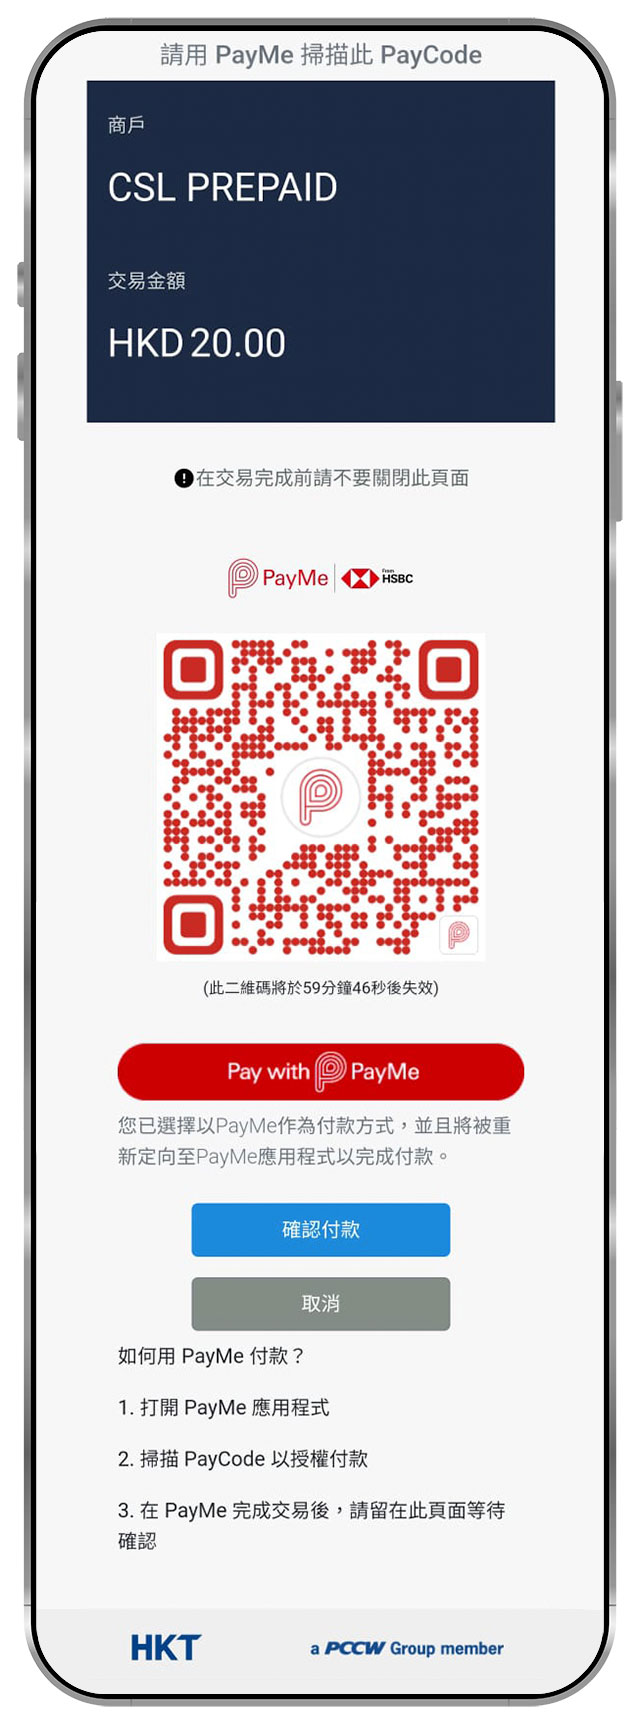 3. 按「確認付款」或打開 PayMe 應用程式，掃描 PayCode 二維碼以授權付款